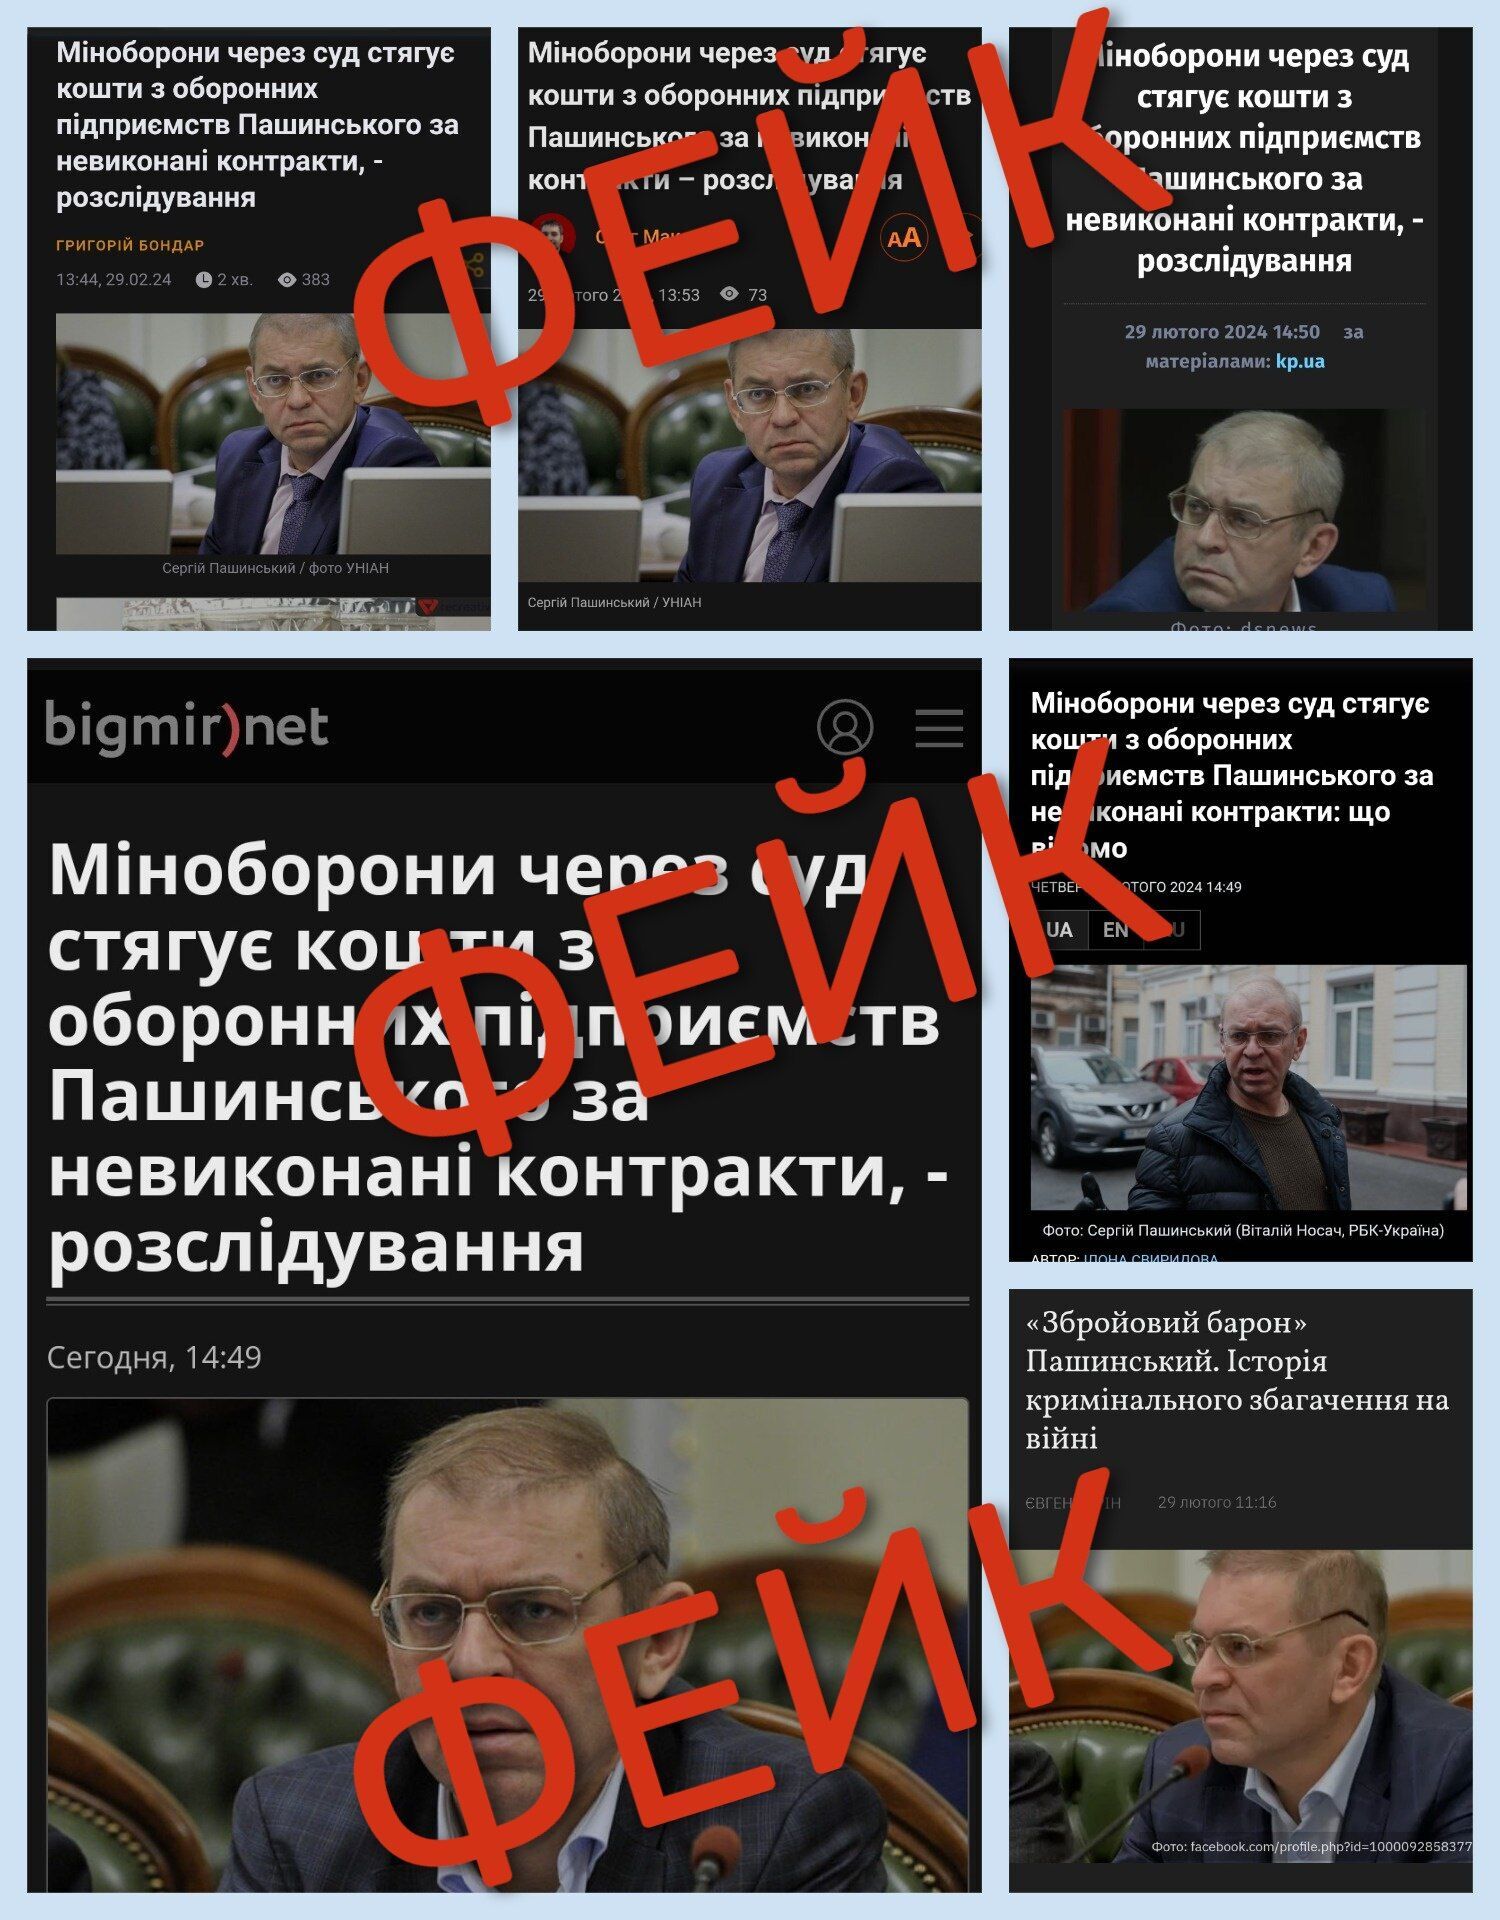 ООО "Украинская бронетехника" не имеет никакой связи с Пашинским. СМИ распространили фейк